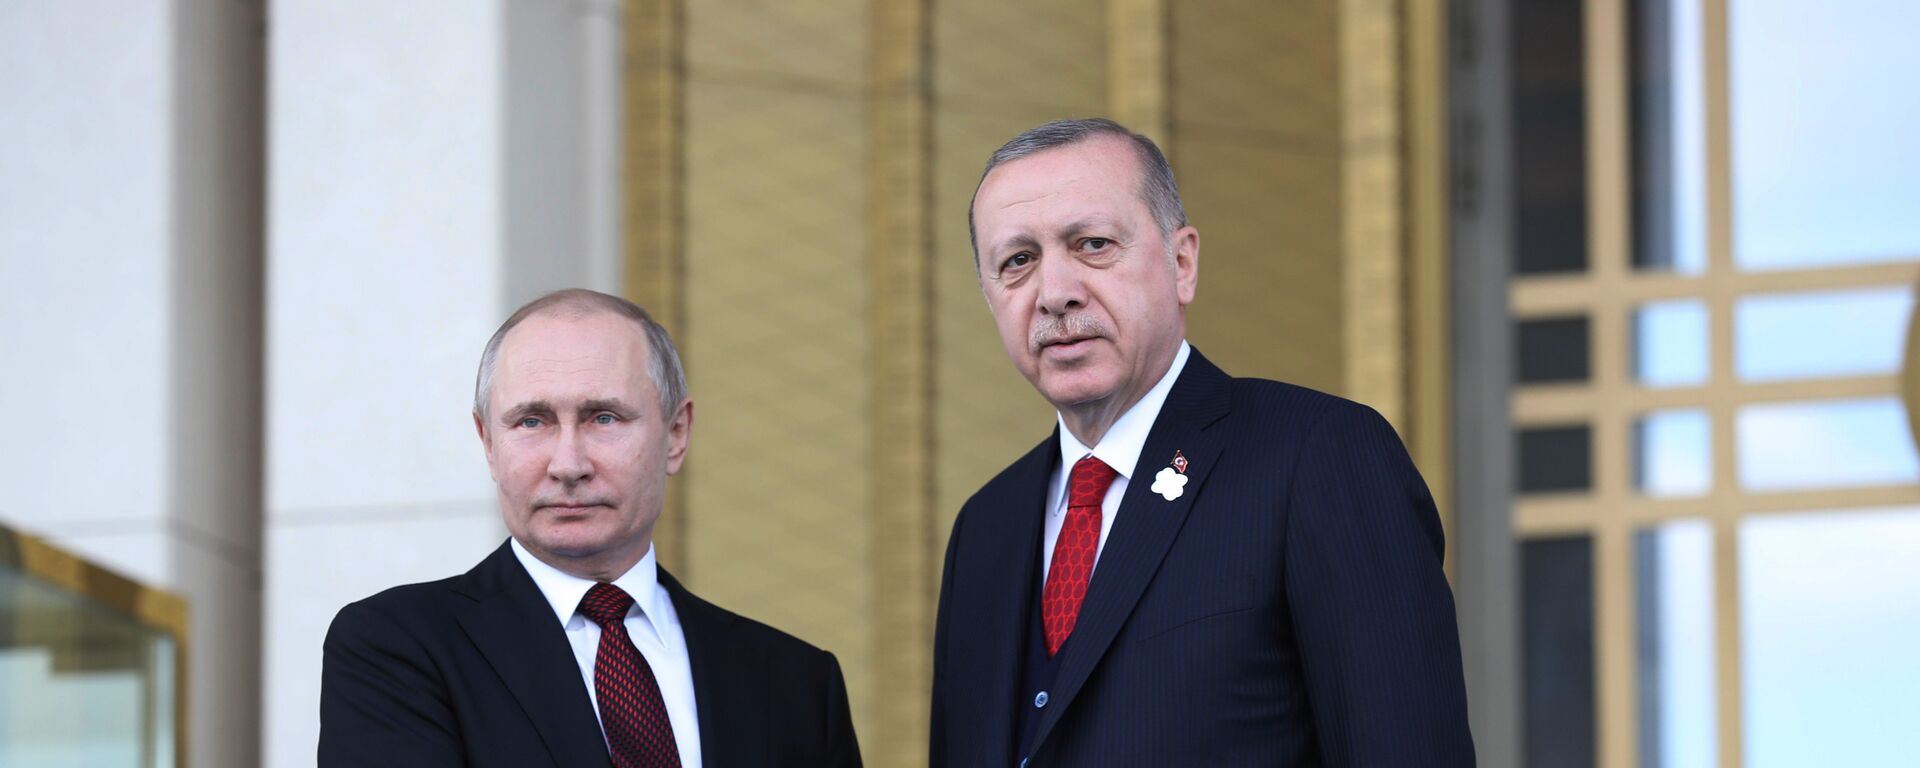 Vladimir Putin và Recep Tayyip Erdogan - Sputnik Việt Nam, 1920, 03.04.2018